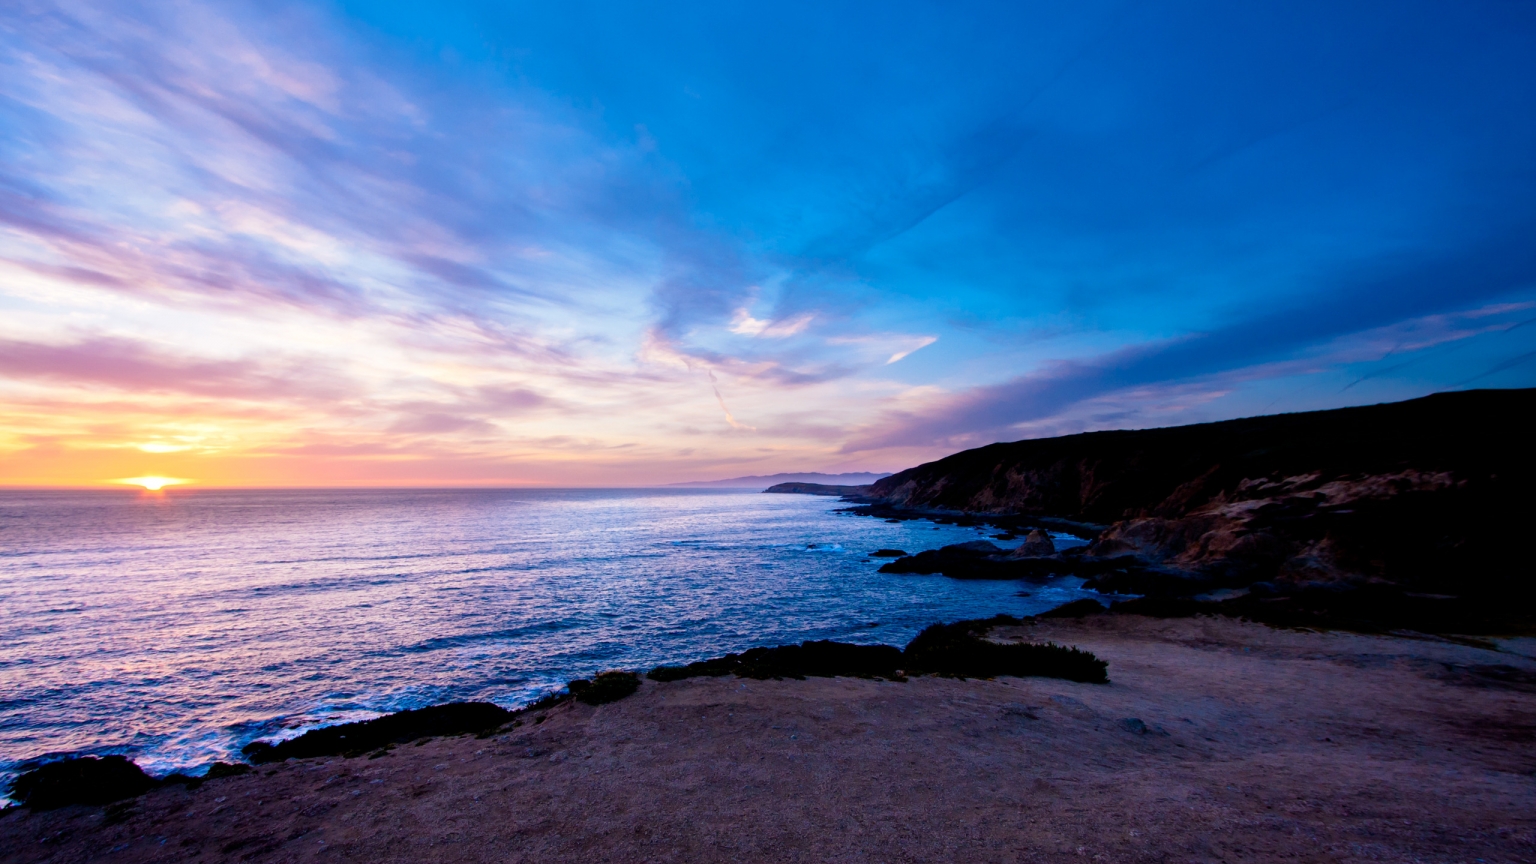 Bodega Head Sunset for 1536 x 864 HDTV resolution